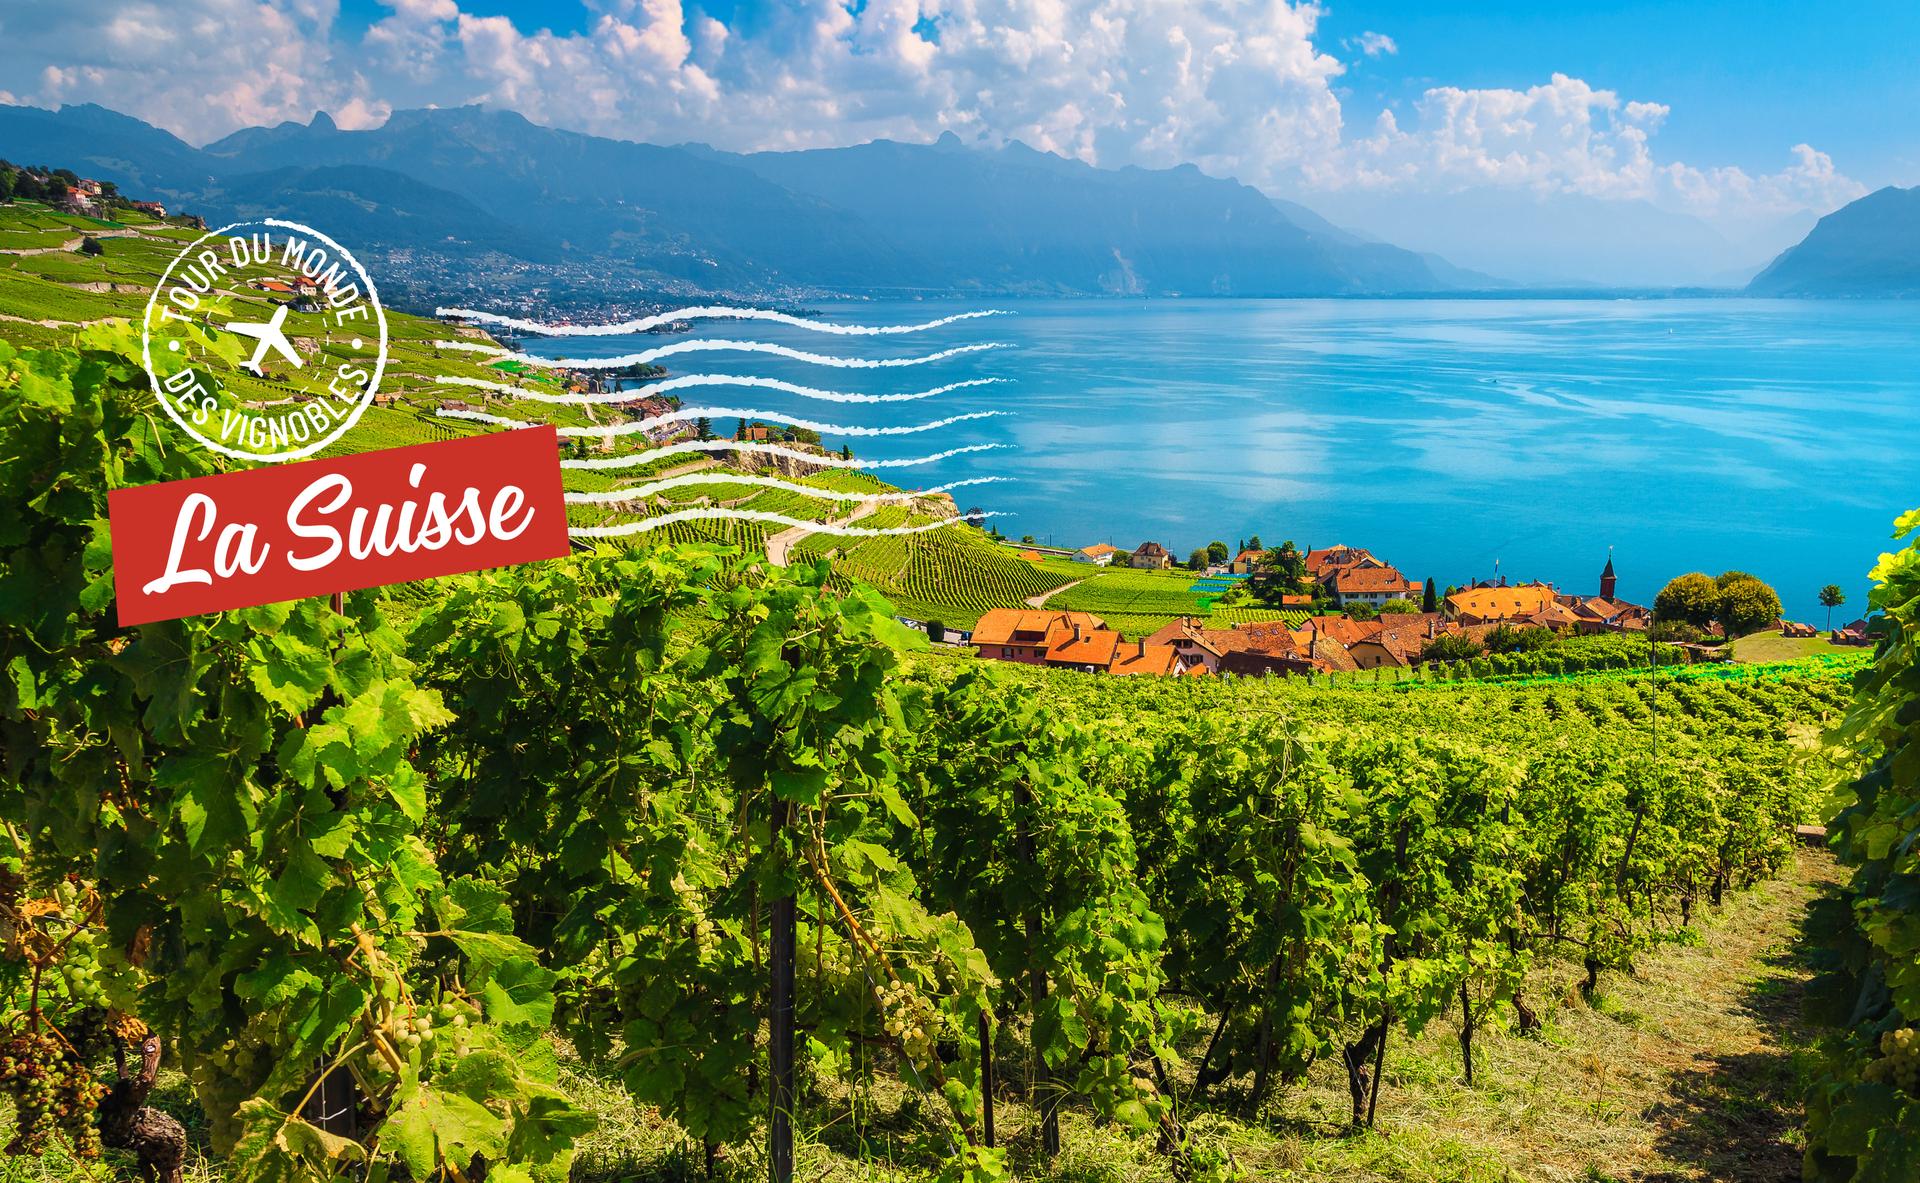 Tour du monde des vignobles : la Suisse